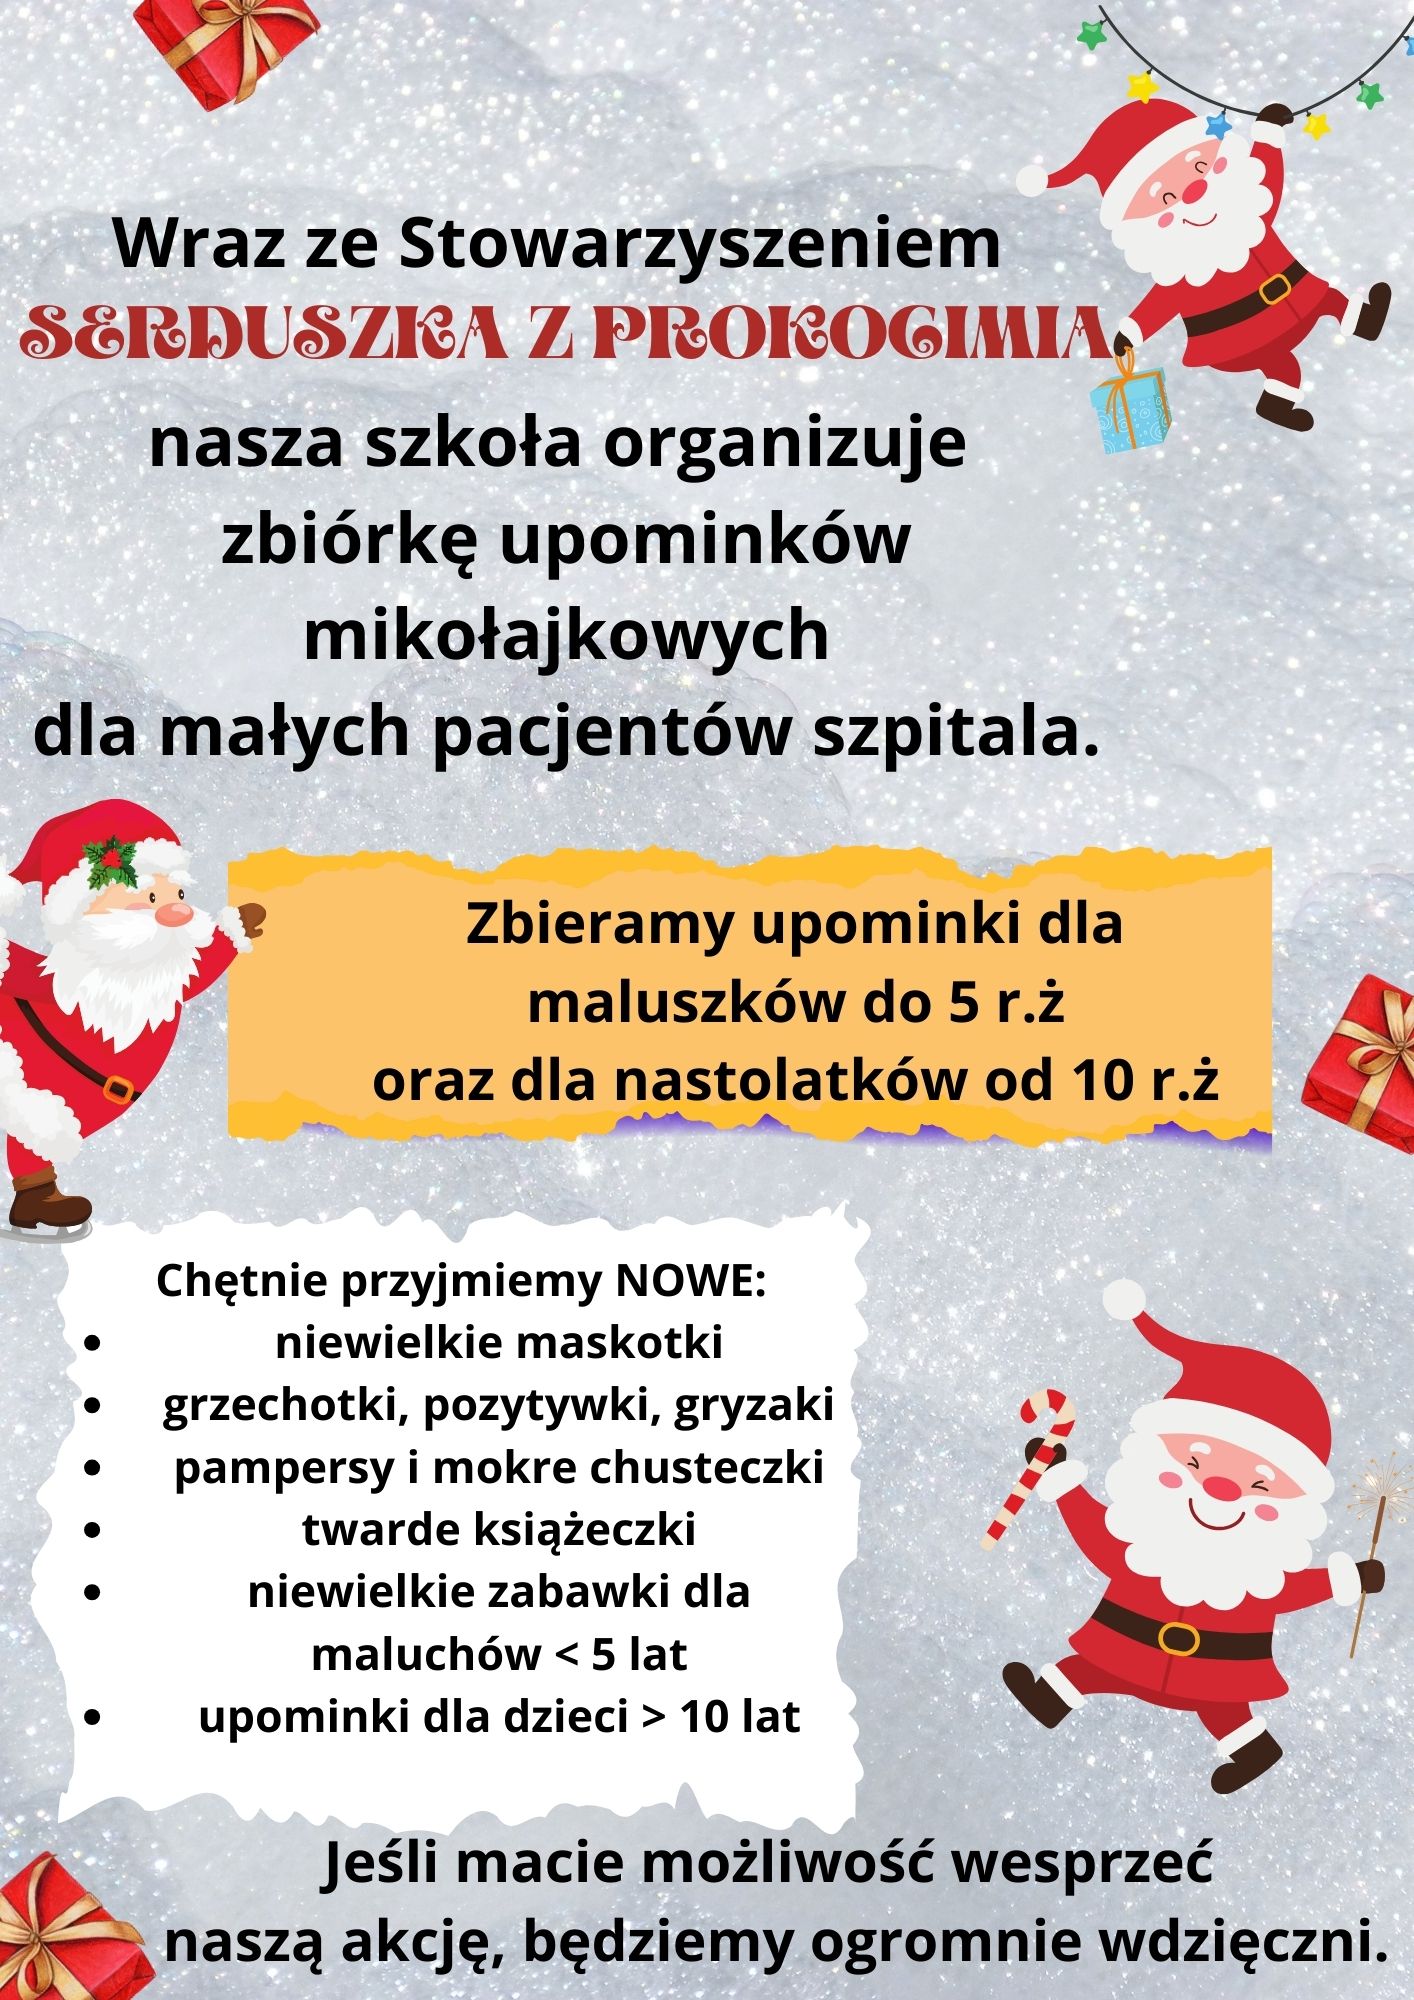 Akcja charytatywna dla Szpitala Dziecięcego w Prokocimiu.